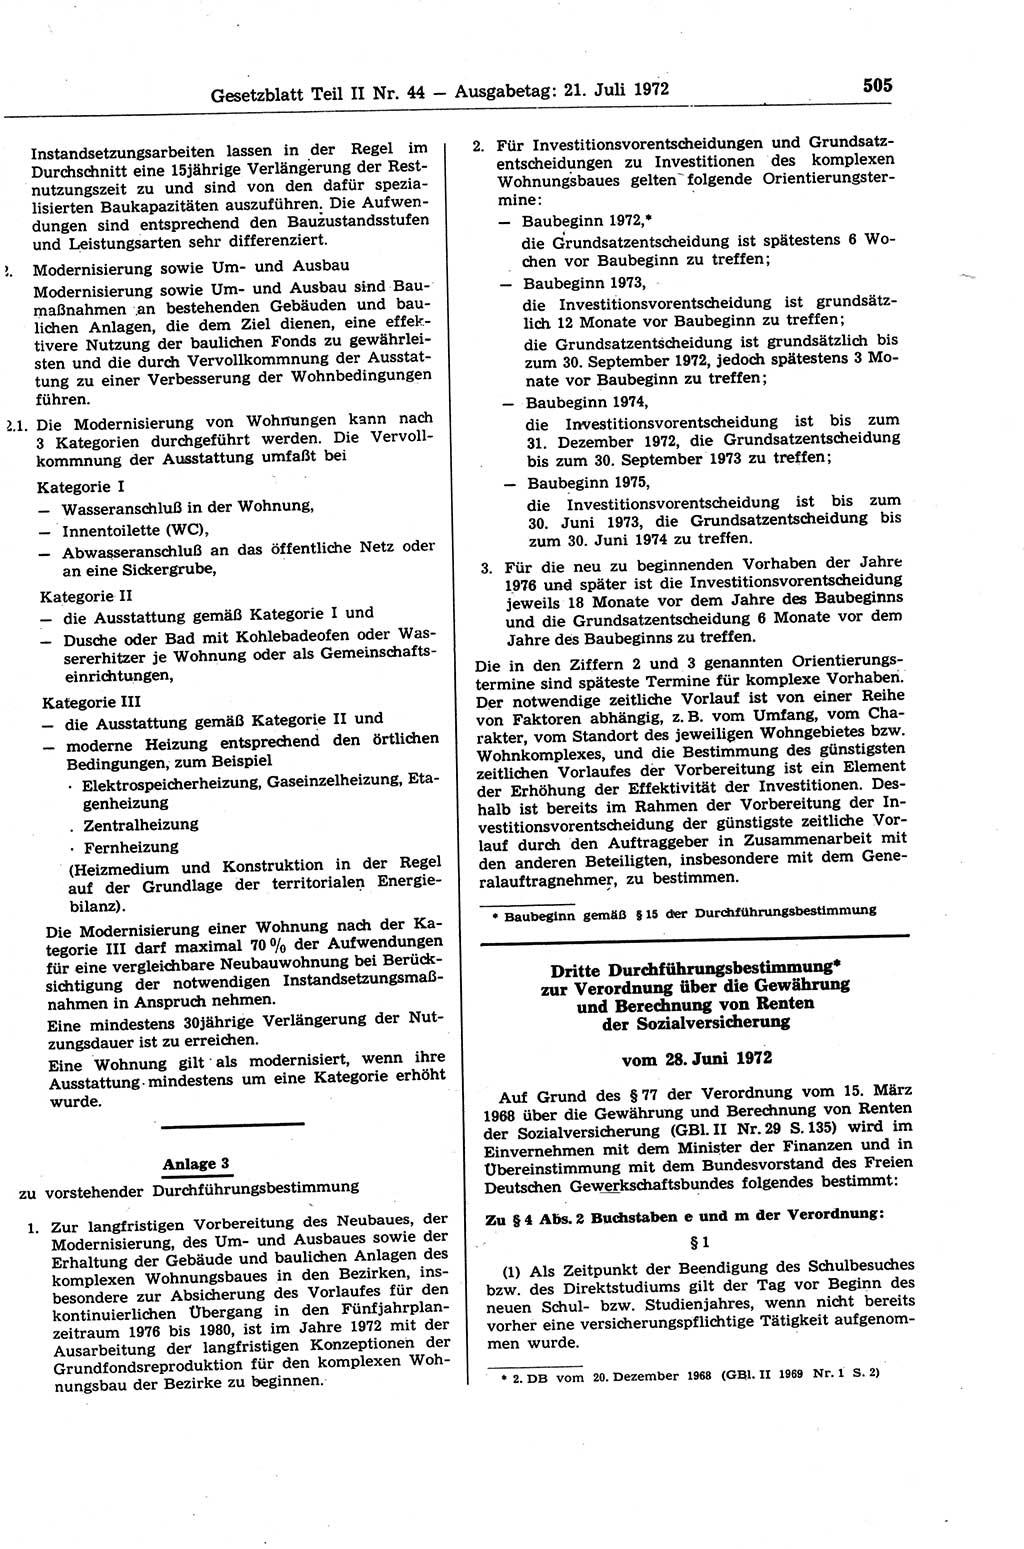 Gesetzblatt (GBl.) der Deutschen Demokratischen Republik (DDR) Teil ⅠⅠ 1972, Seite 505 (GBl. DDR ⅠⅠ 1972, S. 505)